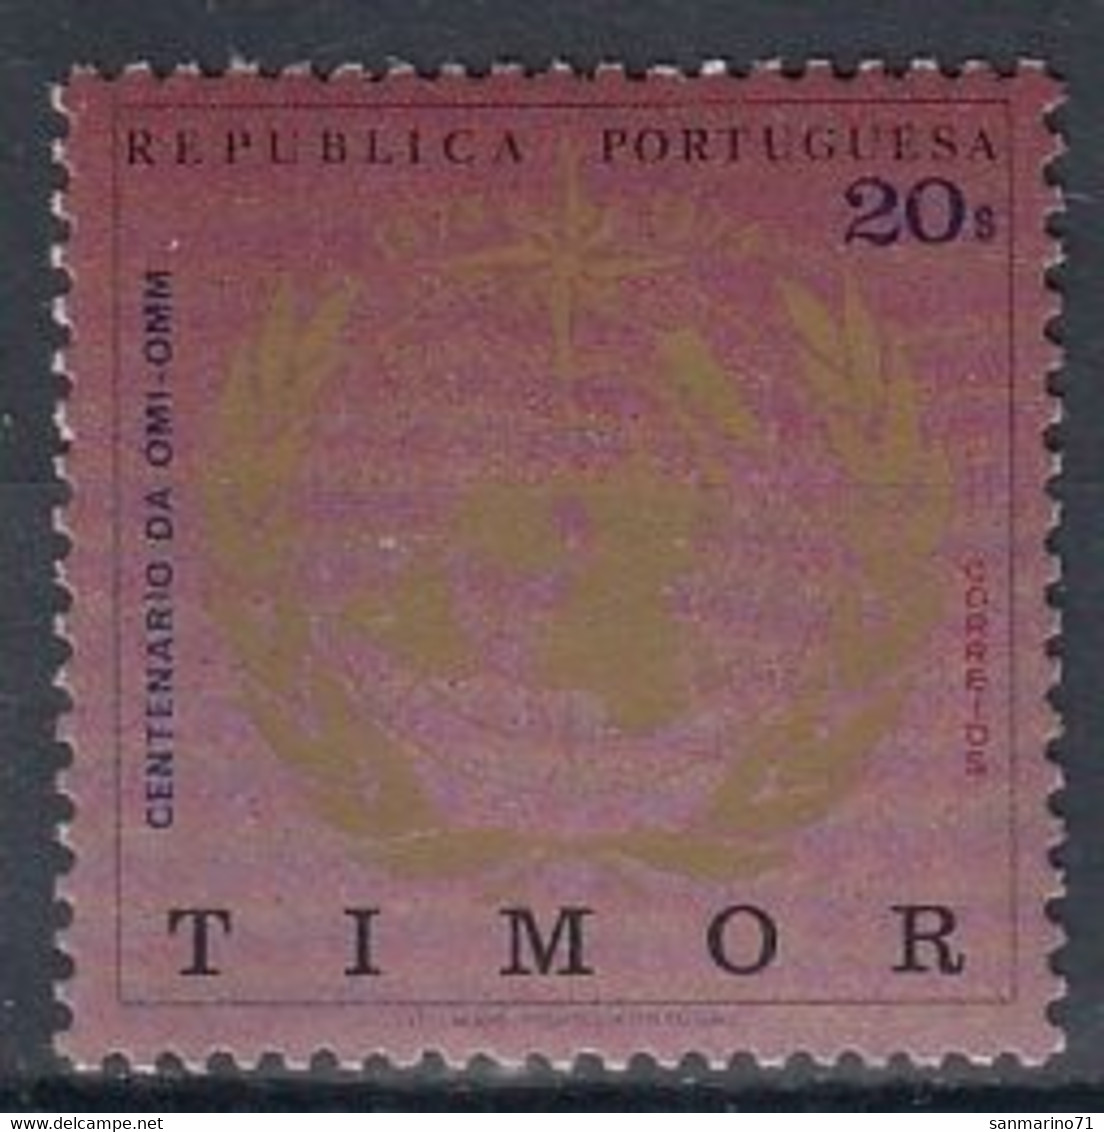 TIMOR 368,unused - Timor Oriental